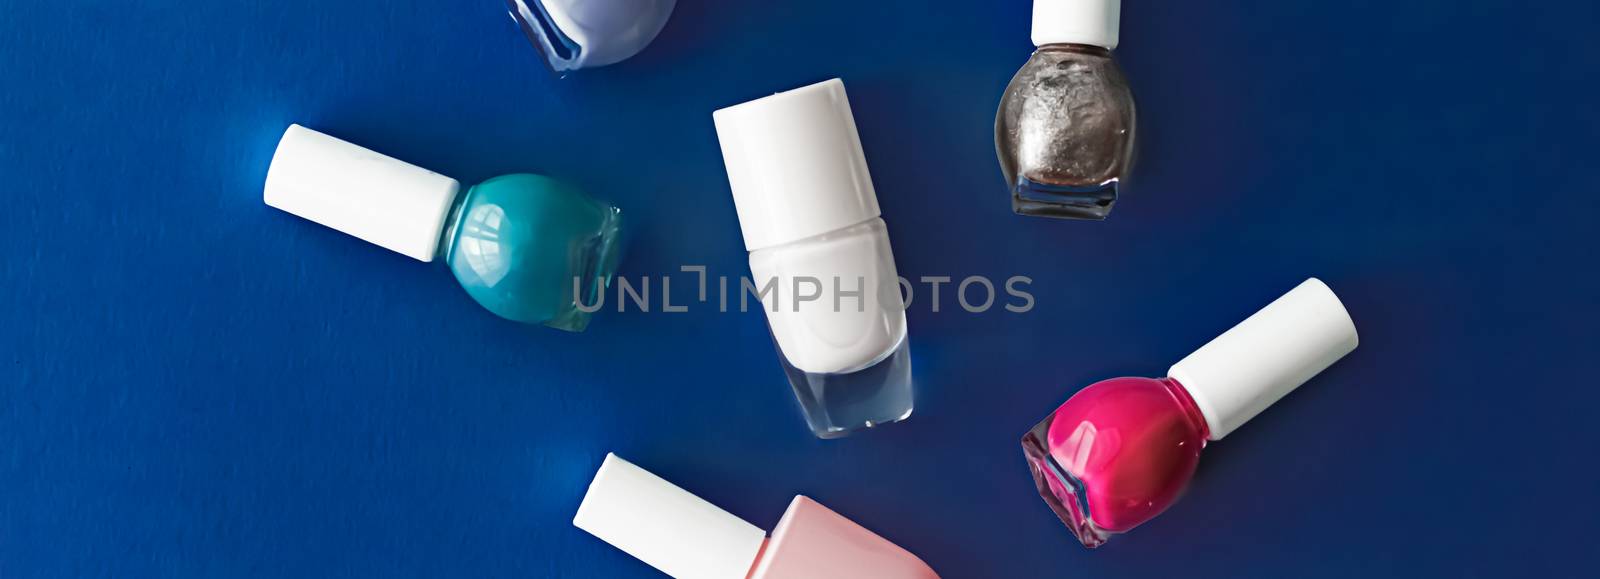 Nail polish bottles on dark blue background, beauty branding